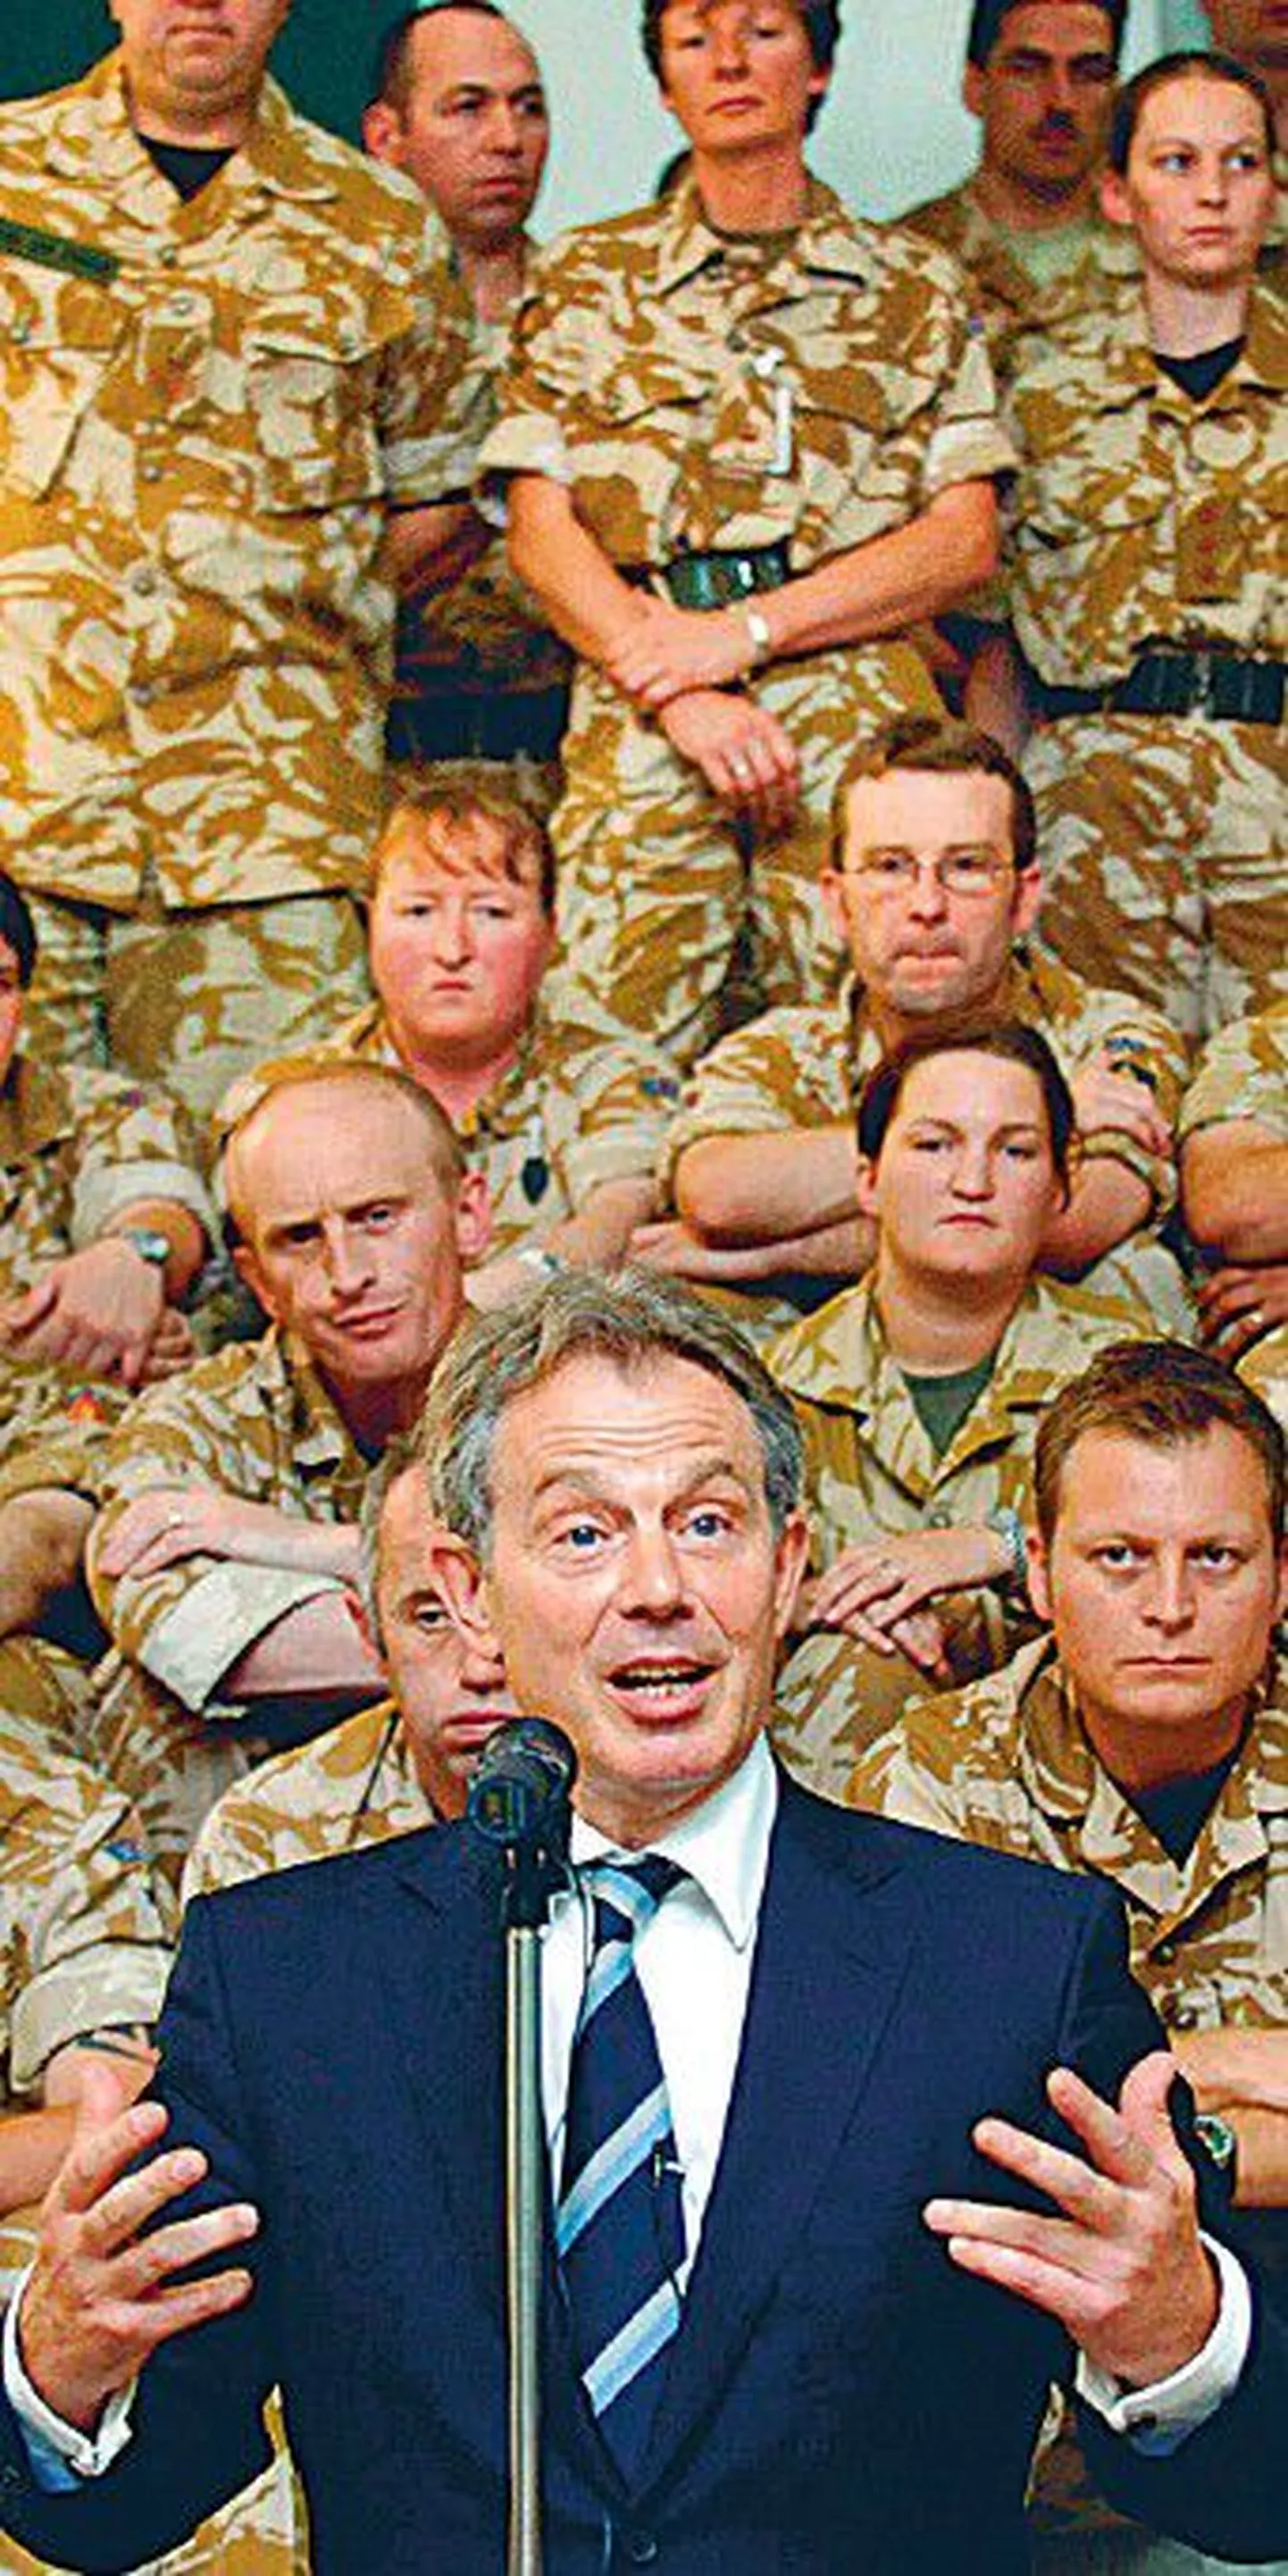 Главный свидетель в расследовании по делу о войне в Ираке — Тони Блэр — в 2007 году в Басре выступил с речью перед британскими солдатами.